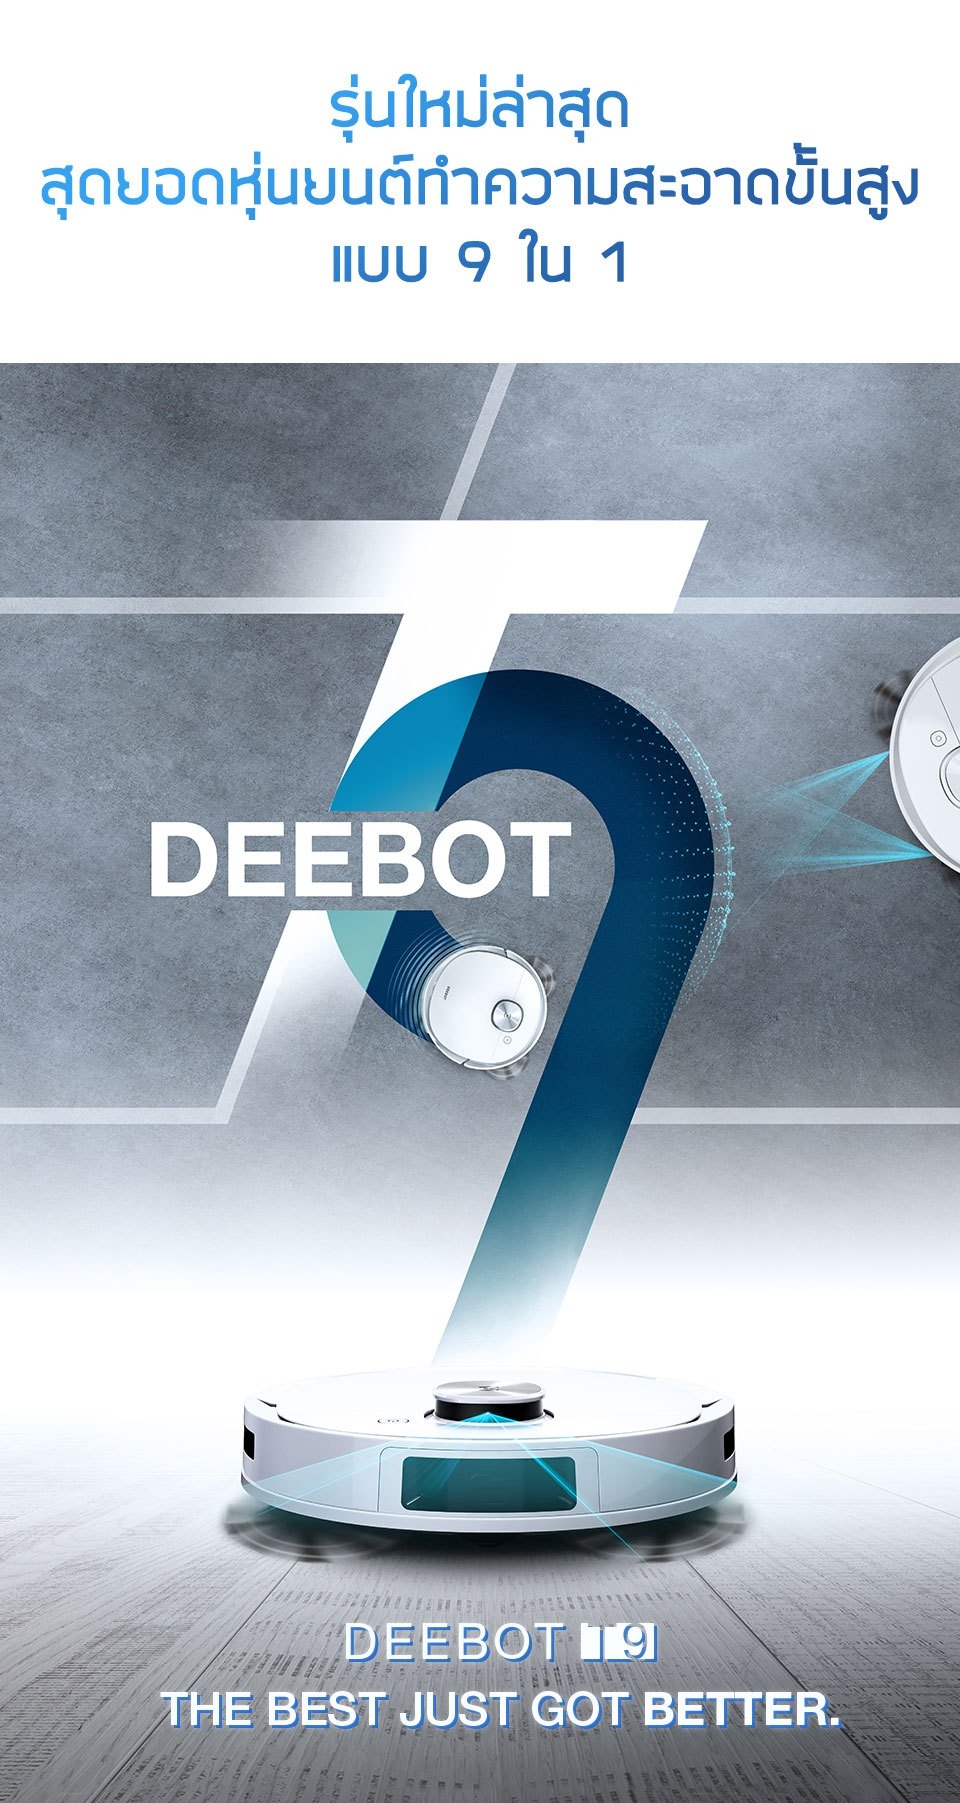 ข้อมูลเกี่ยวกับ ECOVACS หุ่นยนต์ดูดฝุ่น DEEBOT T9 หุ่นยนต์ตัวเลือกแรกของฮยอนบิน